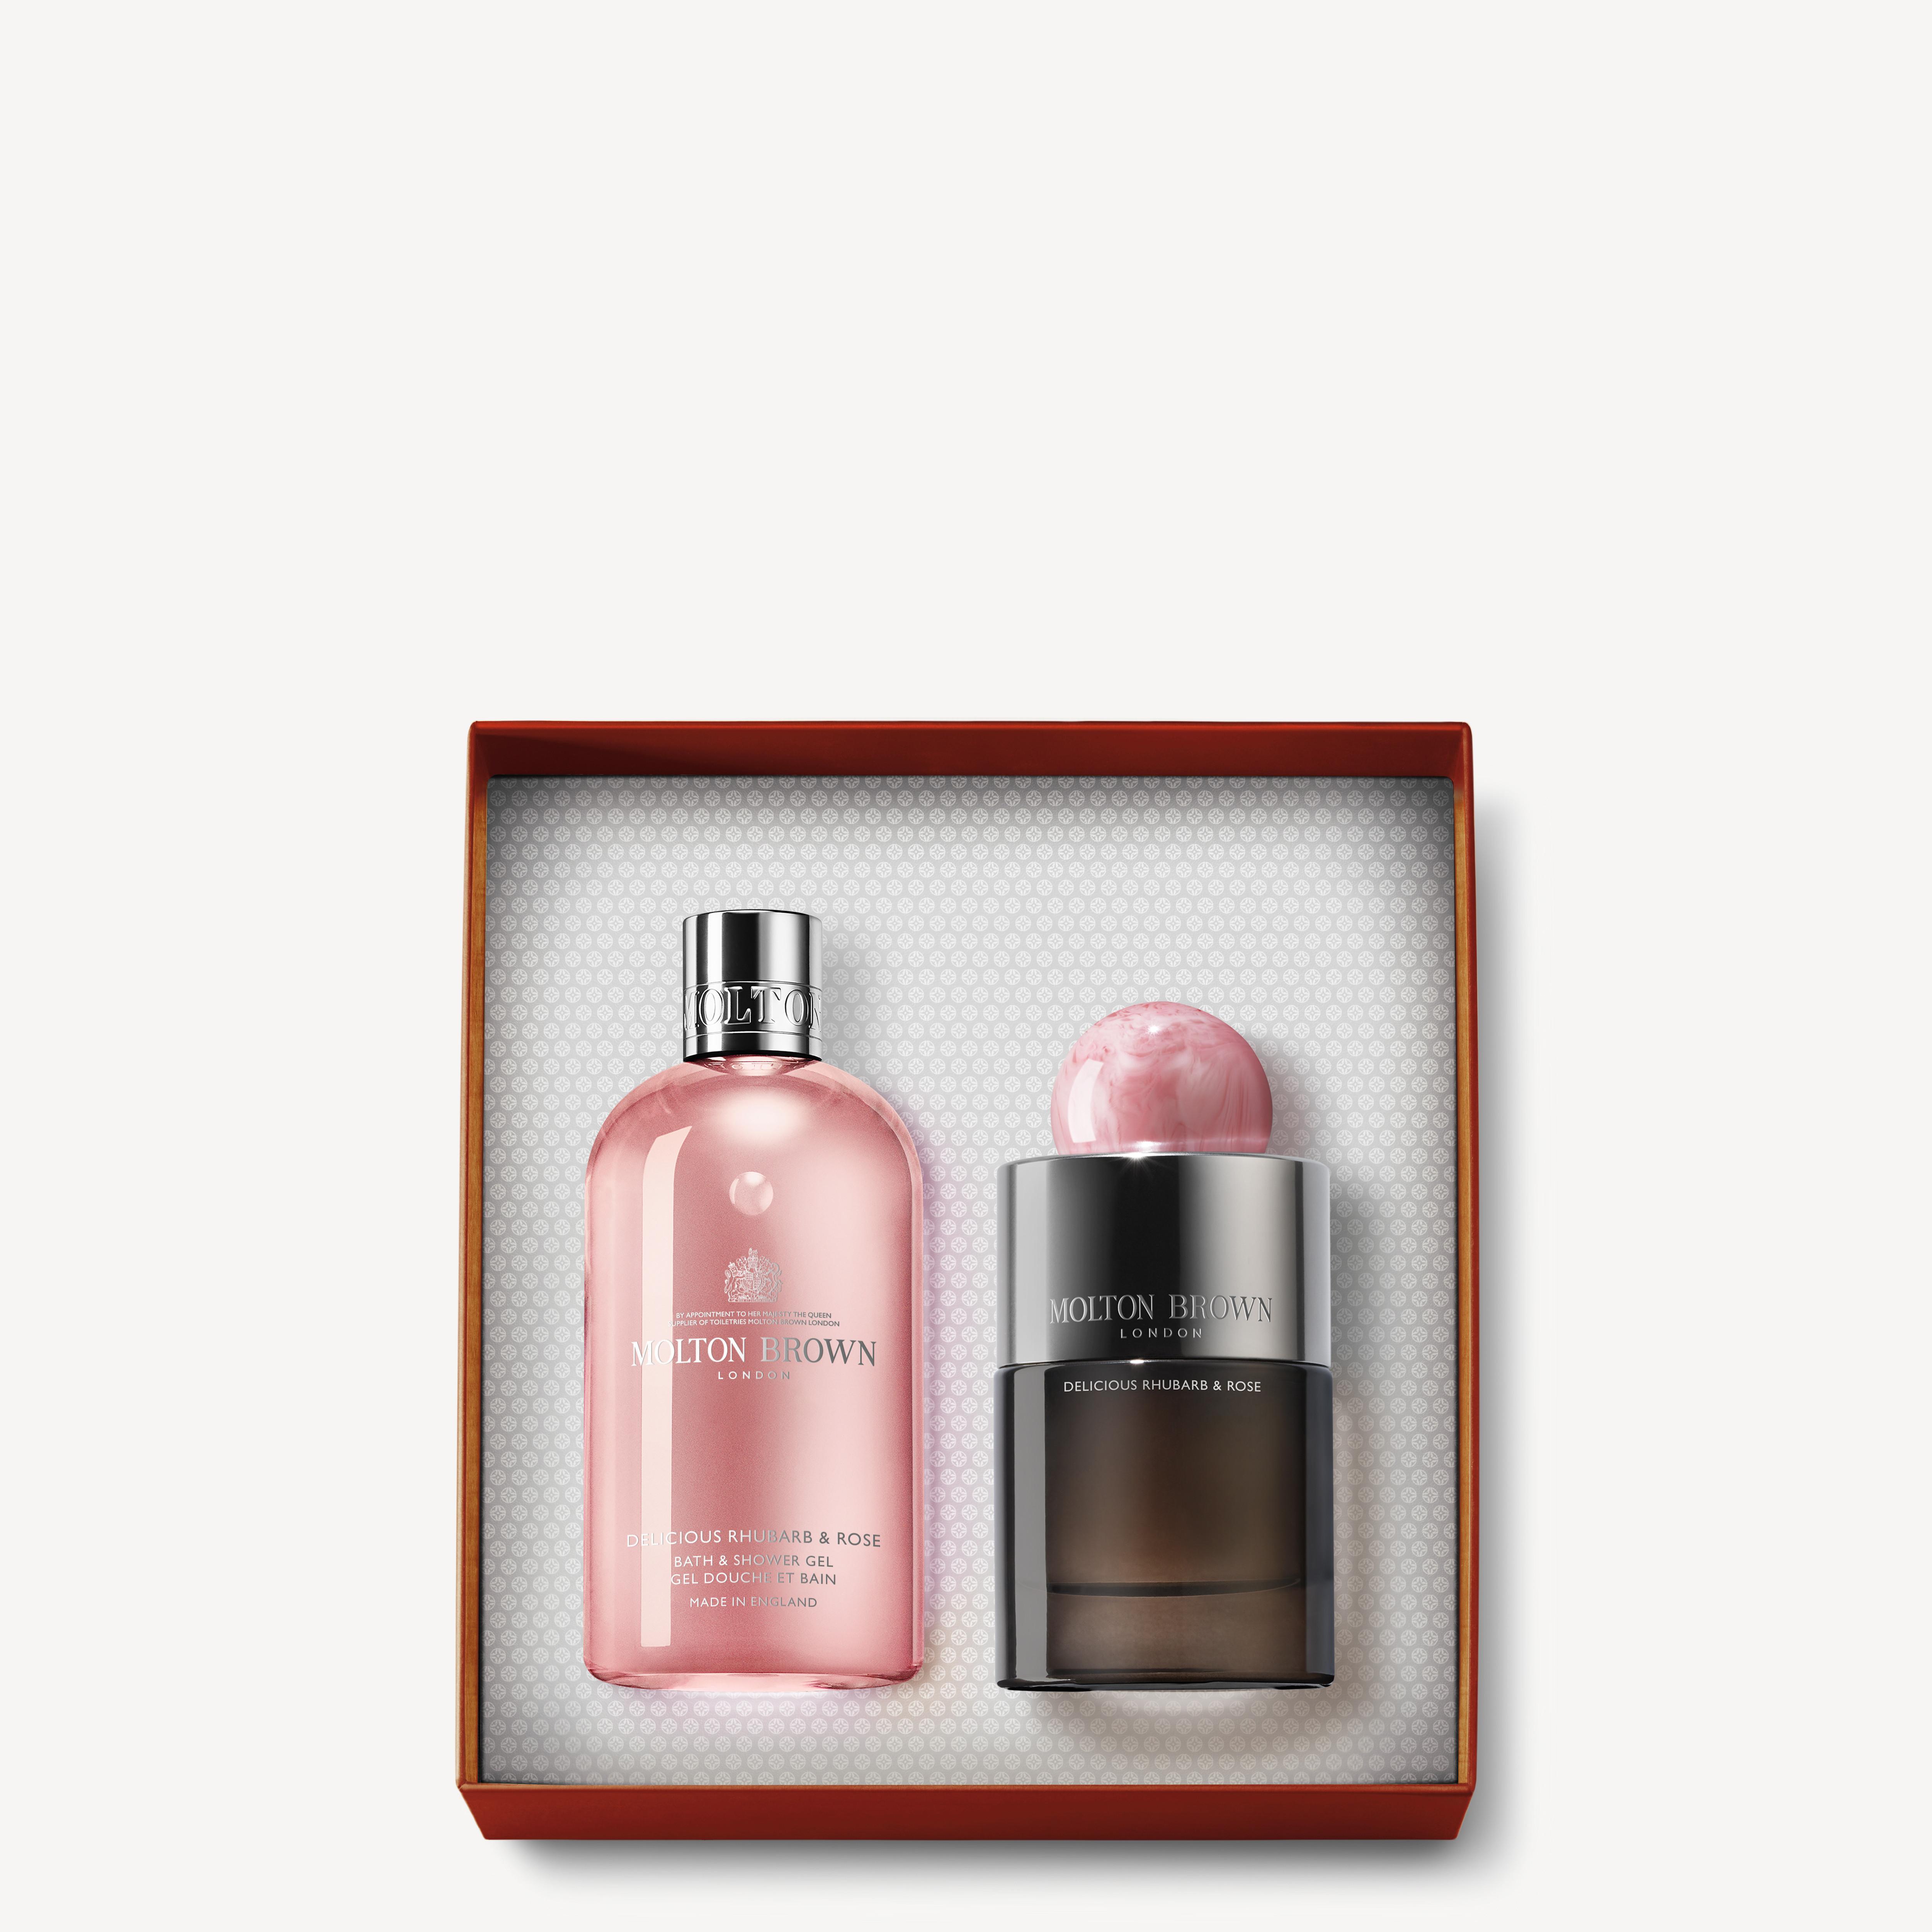 Molton Brown Delicious Rhubarb & Rose Eau de Parfum Gift Set